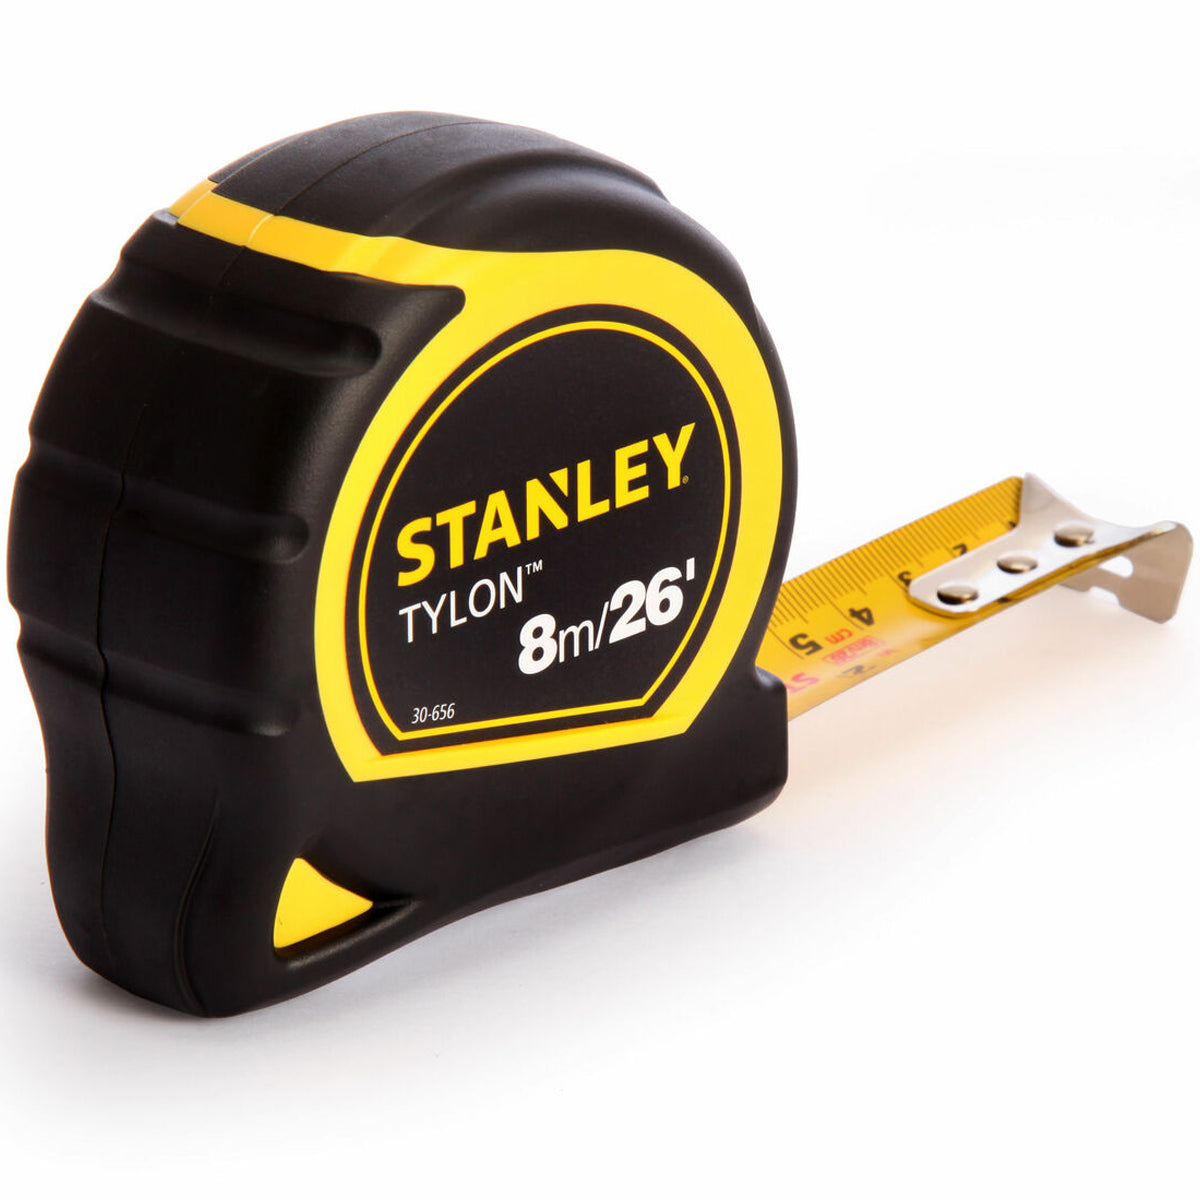 Stanley STA130656N Tylon Pocket Tape Measure 8m/26ft 1-30-656